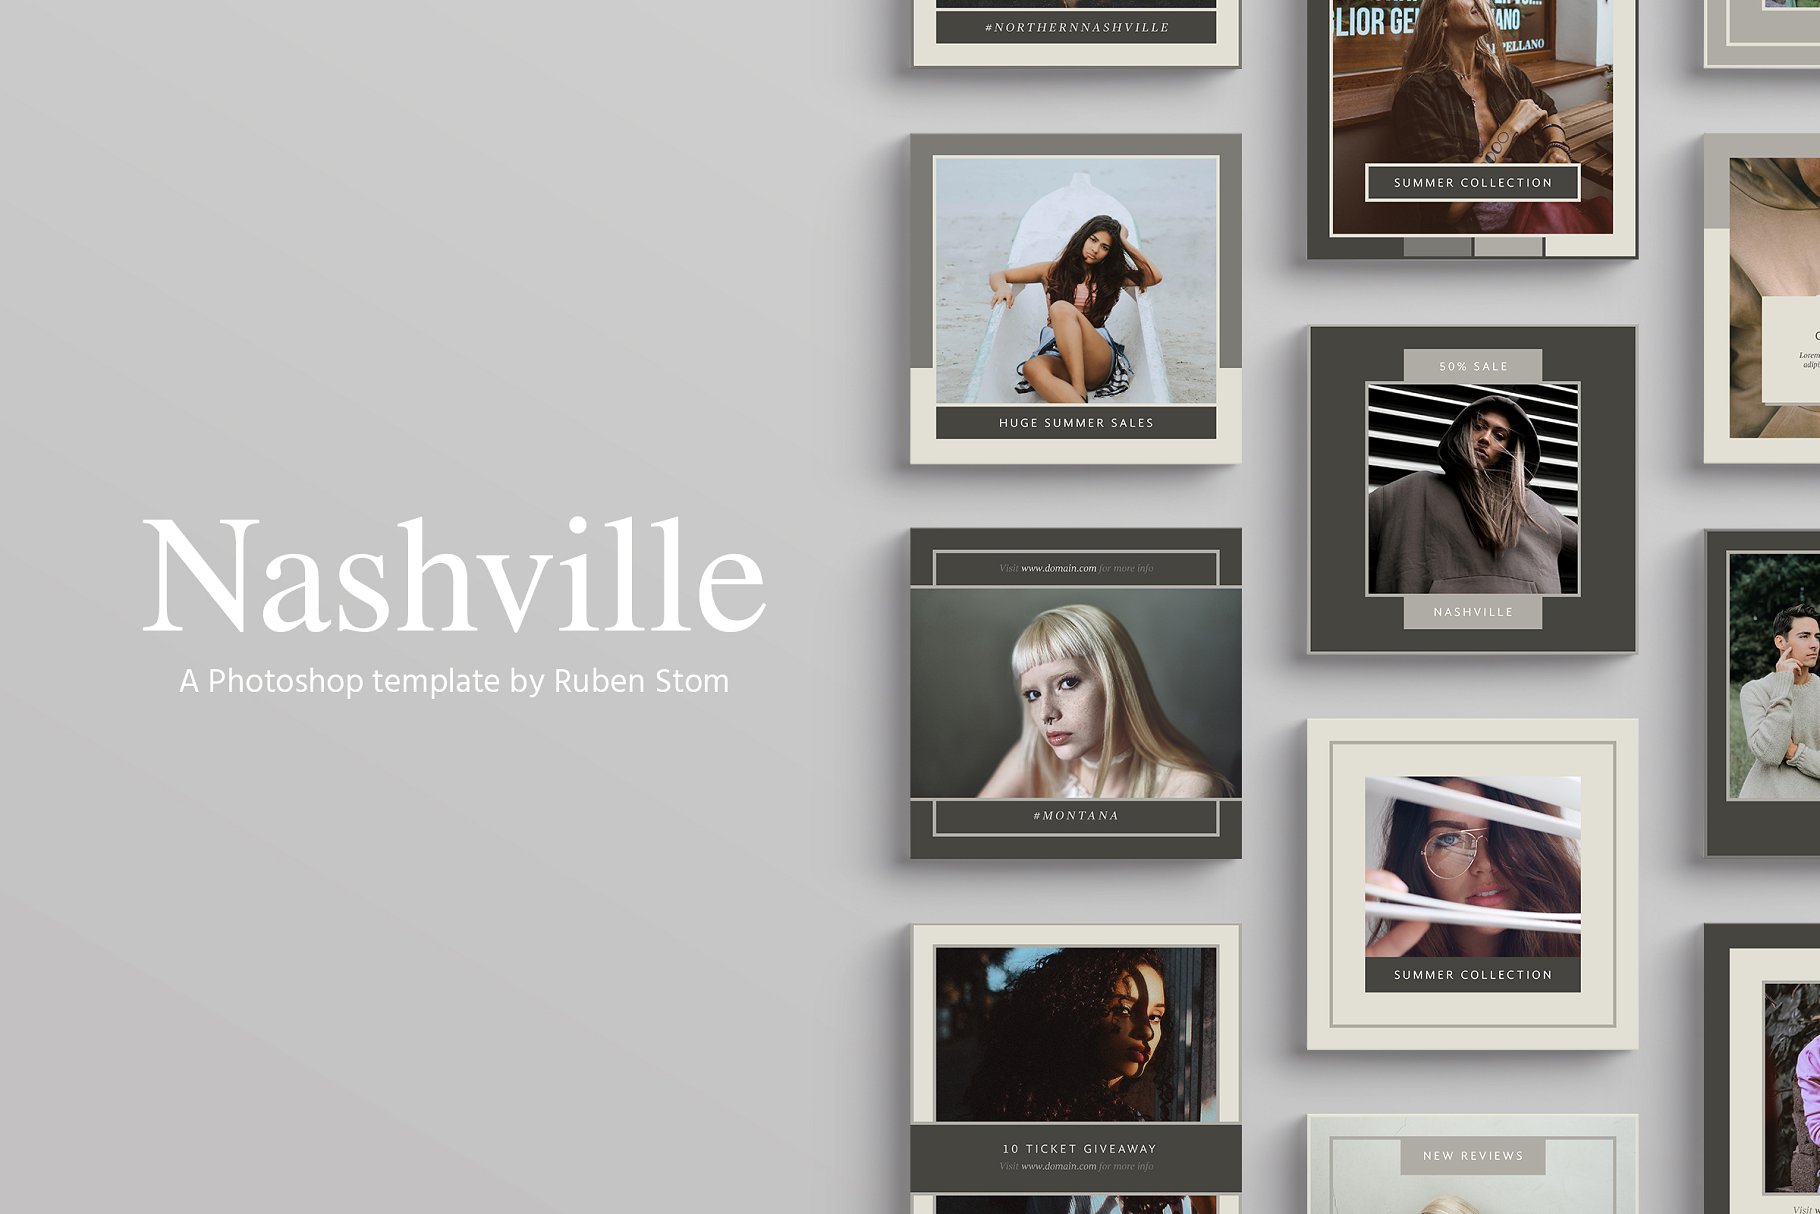 时尚模特摄影主题社交媒体贴图模板素材库精选 Nashville Social Media Templates插图